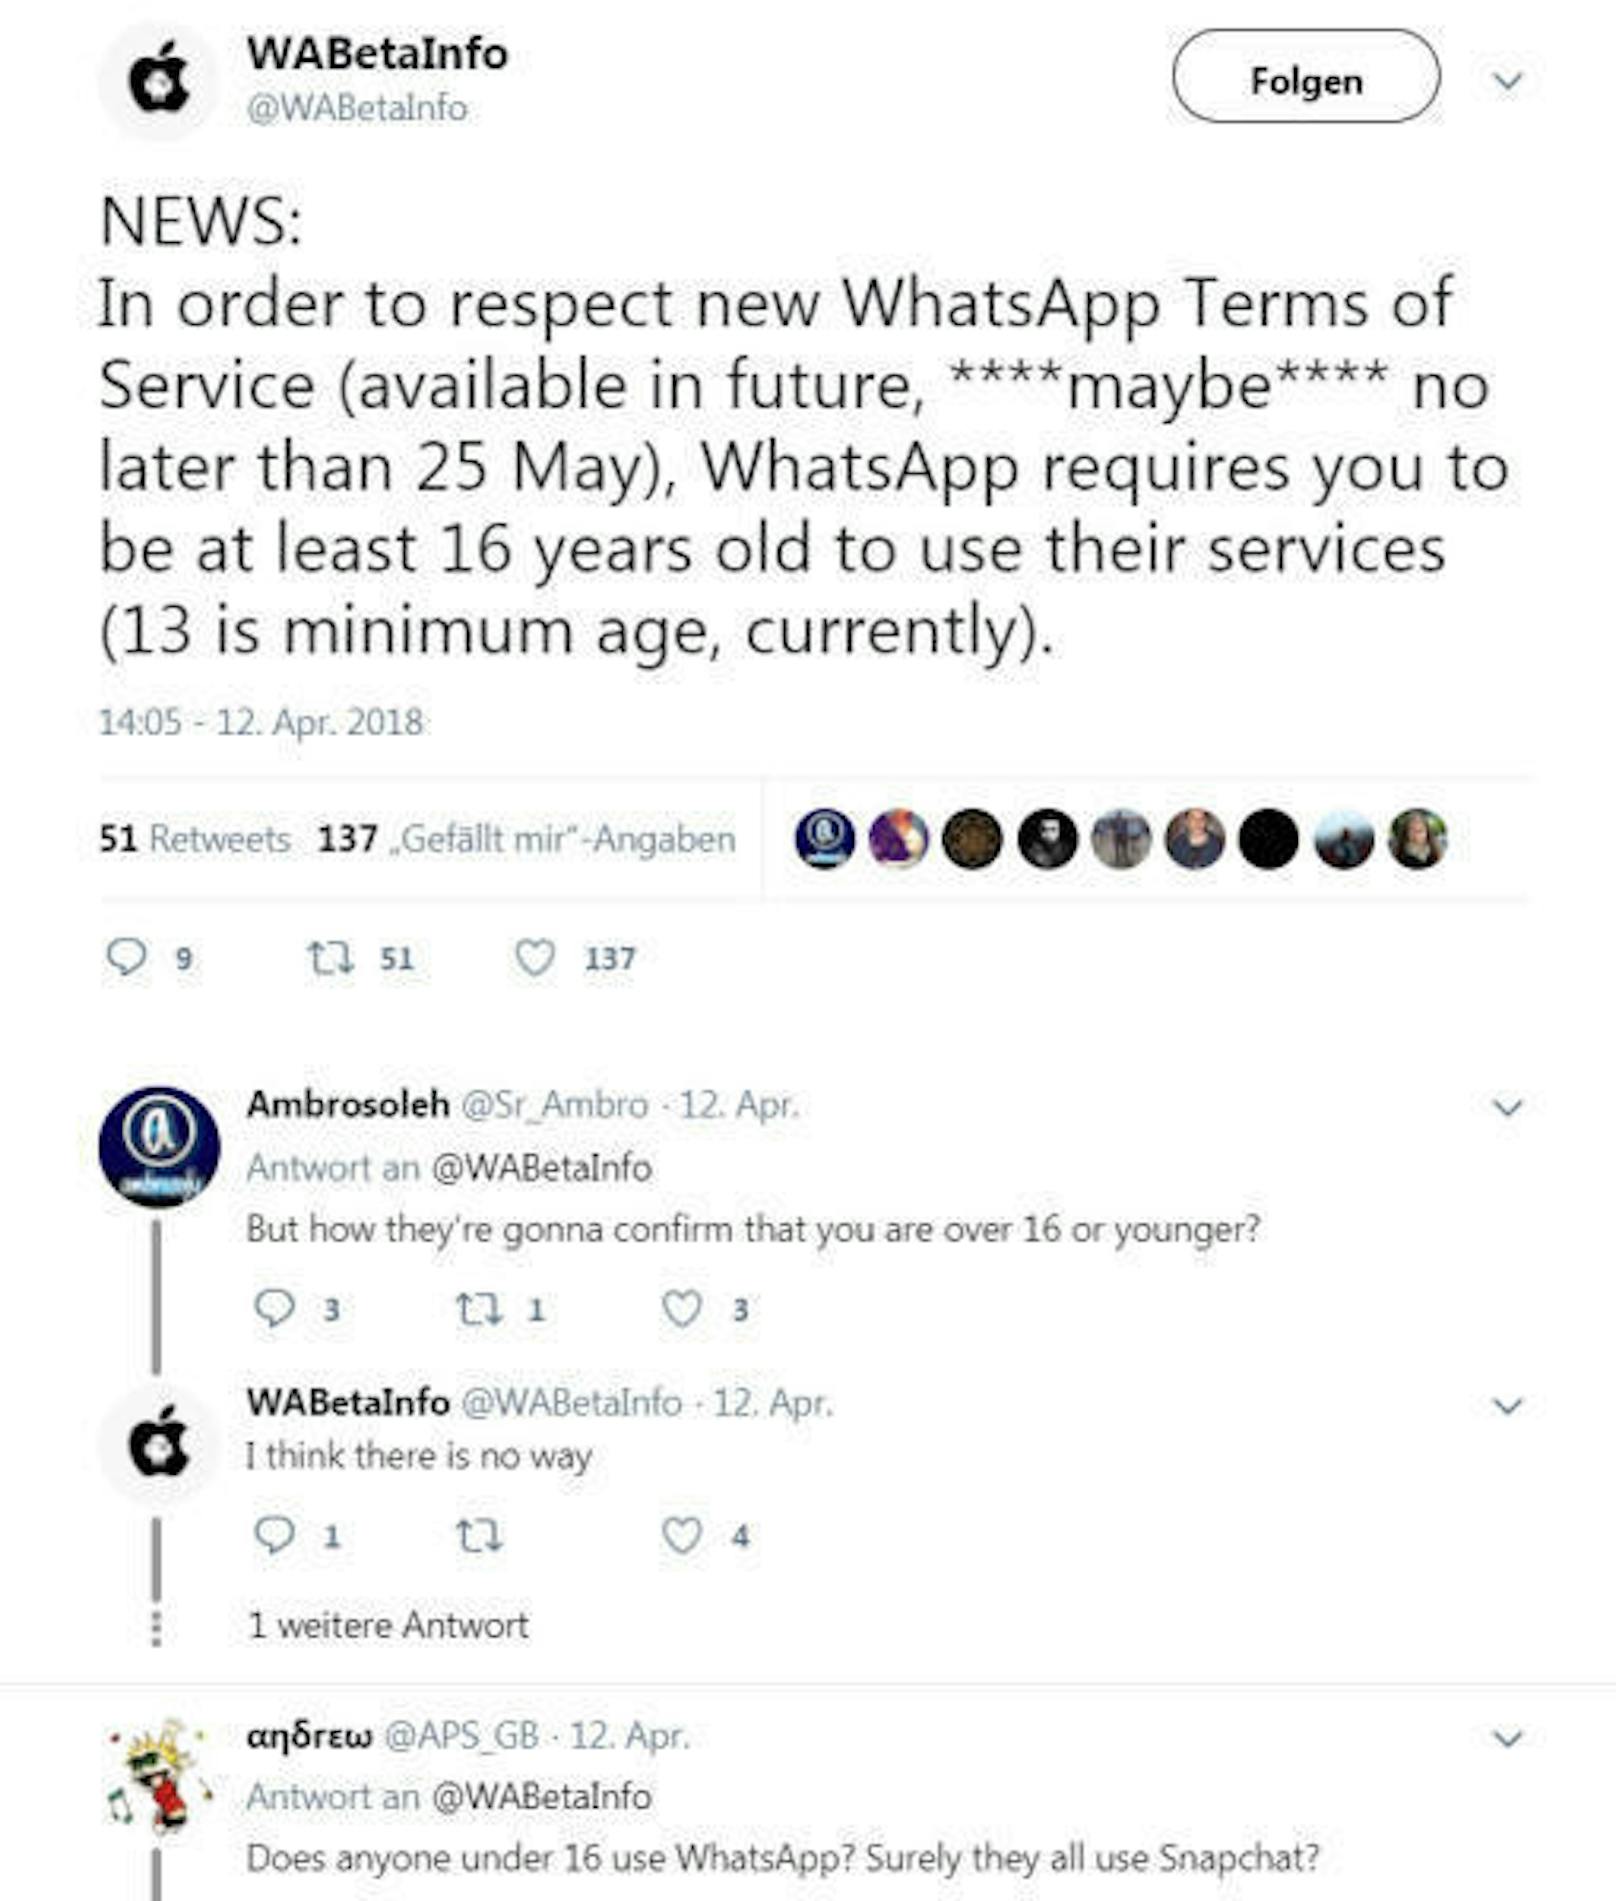 <b>18. April 2018:</b> Der Messenger-Dienst WhatsApp plant, das Mindestalter von 13 auf 16 Jahre zu erhöhen. Die Änderung solle spätestens am 25. Mai in Kraft treten, schreibt Wabetainfo.com, ein Blog, der in der Regel gut über Änderungen bei WhatsApp informiert ist. Grund für die Änderung könnten die neuen EU-Datenschutzregeln sein, wonach Nutzer ab dem 25. Mai nicht jünger als 16 Jahre sein dürfen, wenn Dienste personenbezogene Daten verarbeiten. In der Praxis jedoch dürfte es für WhatsApp schwierig werden, das Alter seiner Nutzer zu kontrollieren.